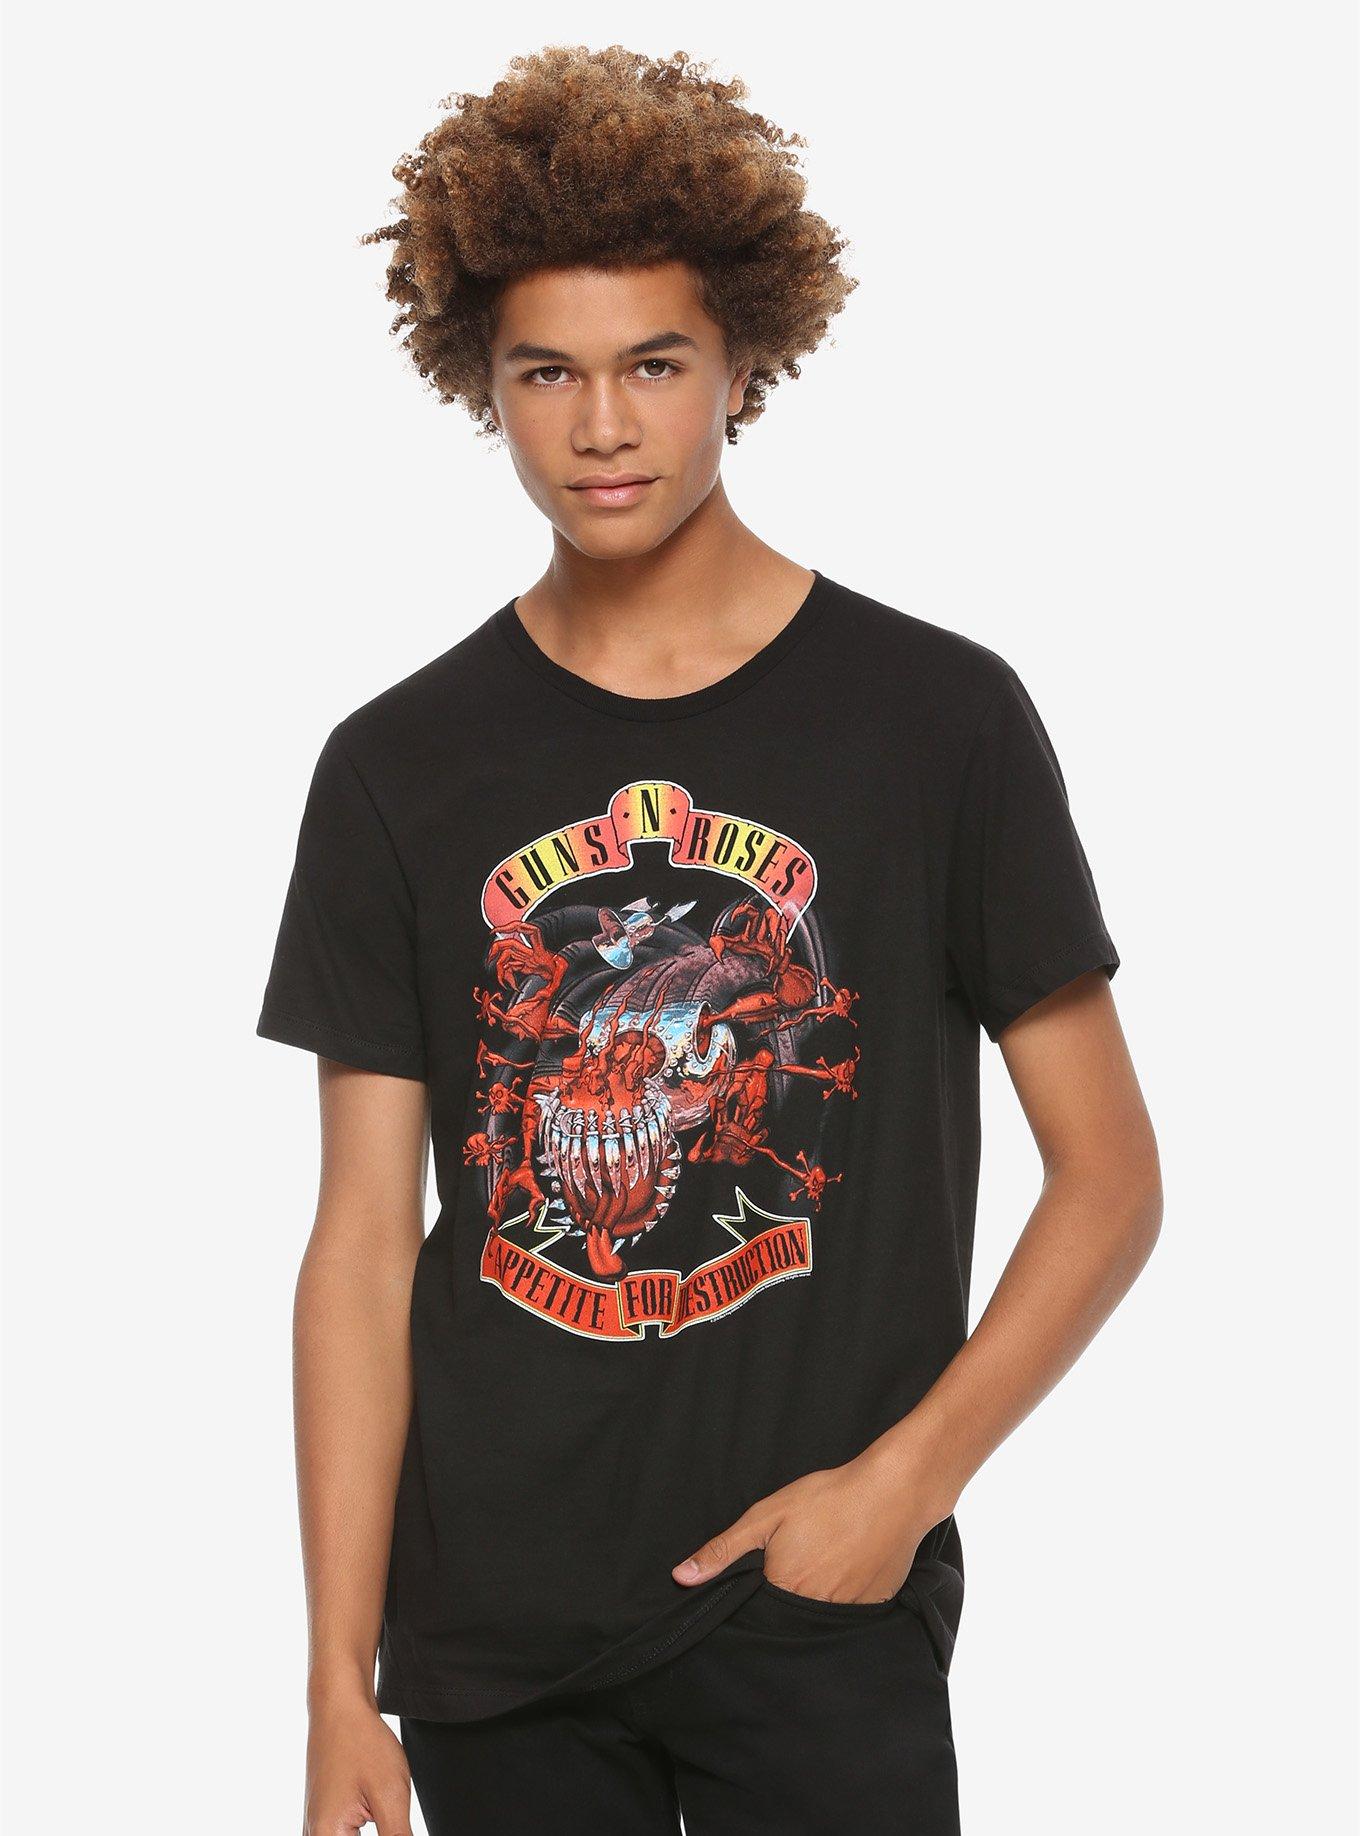 Guns N' Roses Appetite For Destruction Creature T-Shirt, , alternate